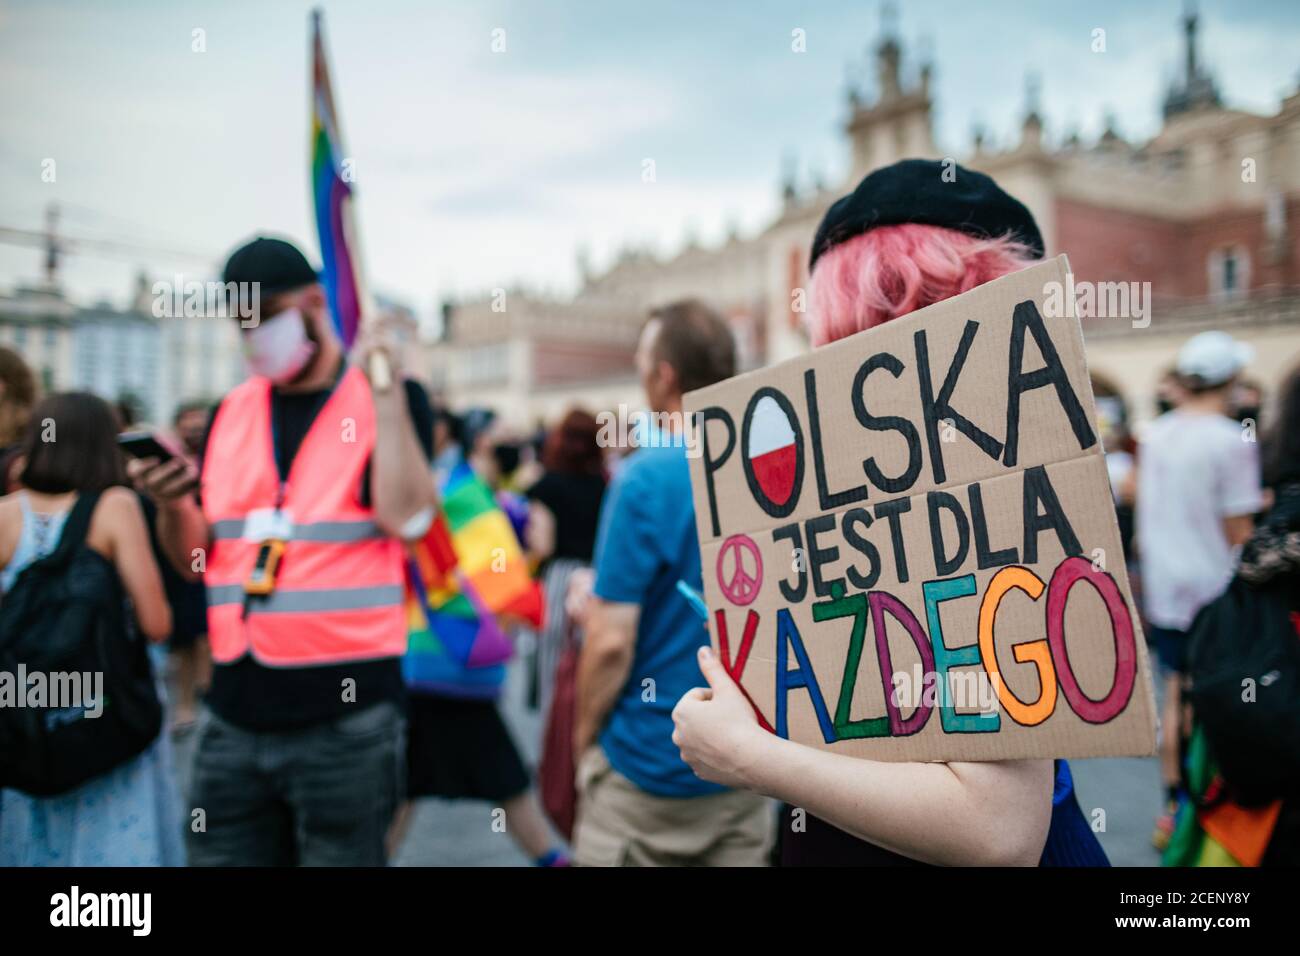 Un partecipante tiene un cartello che dice che la Polonia è per tutti durante il marzo.la marcia annuale di uguaglianza, conosciuta anche come Pride Parade, ha attratto un numero particolarmente grande di partecipanti, così come due contromunce. In Polonia, recentemente si è svolto un acceso dibattito pubblico tra sostenitori della tolleranza, con una visione di centro o di sinistra, e circoli conservatori, nazionalisti e cattolici di destra, che stanno esprimendo la loro avversione alla comunità LGBT in modo sempre più spietato. Gli oppositori della comunità LGBT lo accusano di cercare di realizzare una rivoluzione morale. Quelli in favou Foto Stock